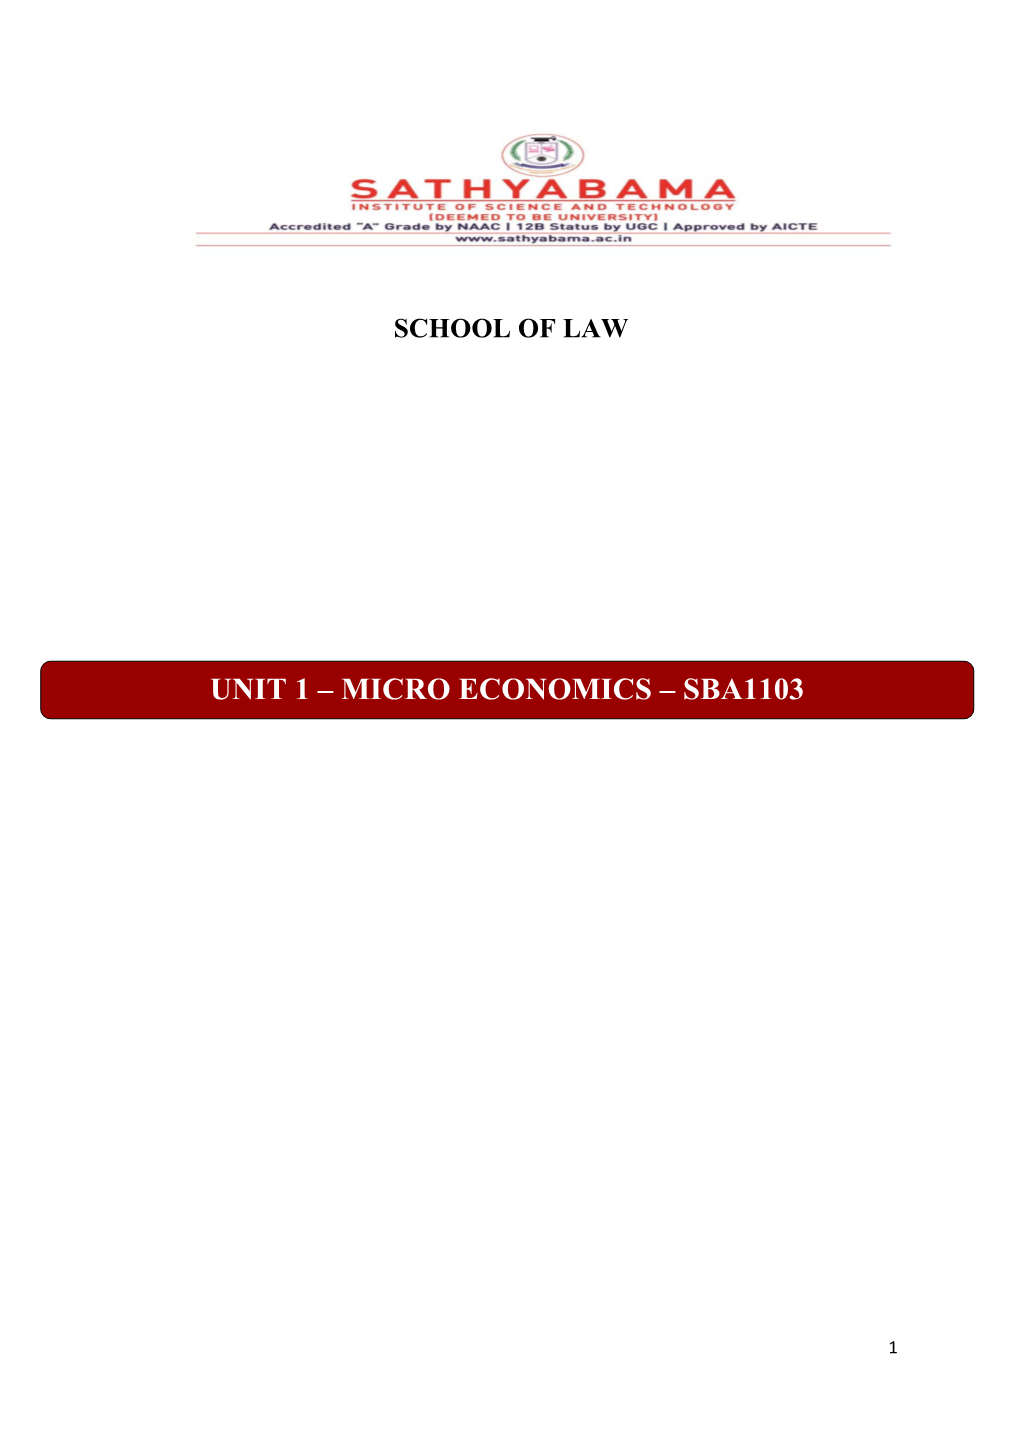 Micro Economics – Sba1103